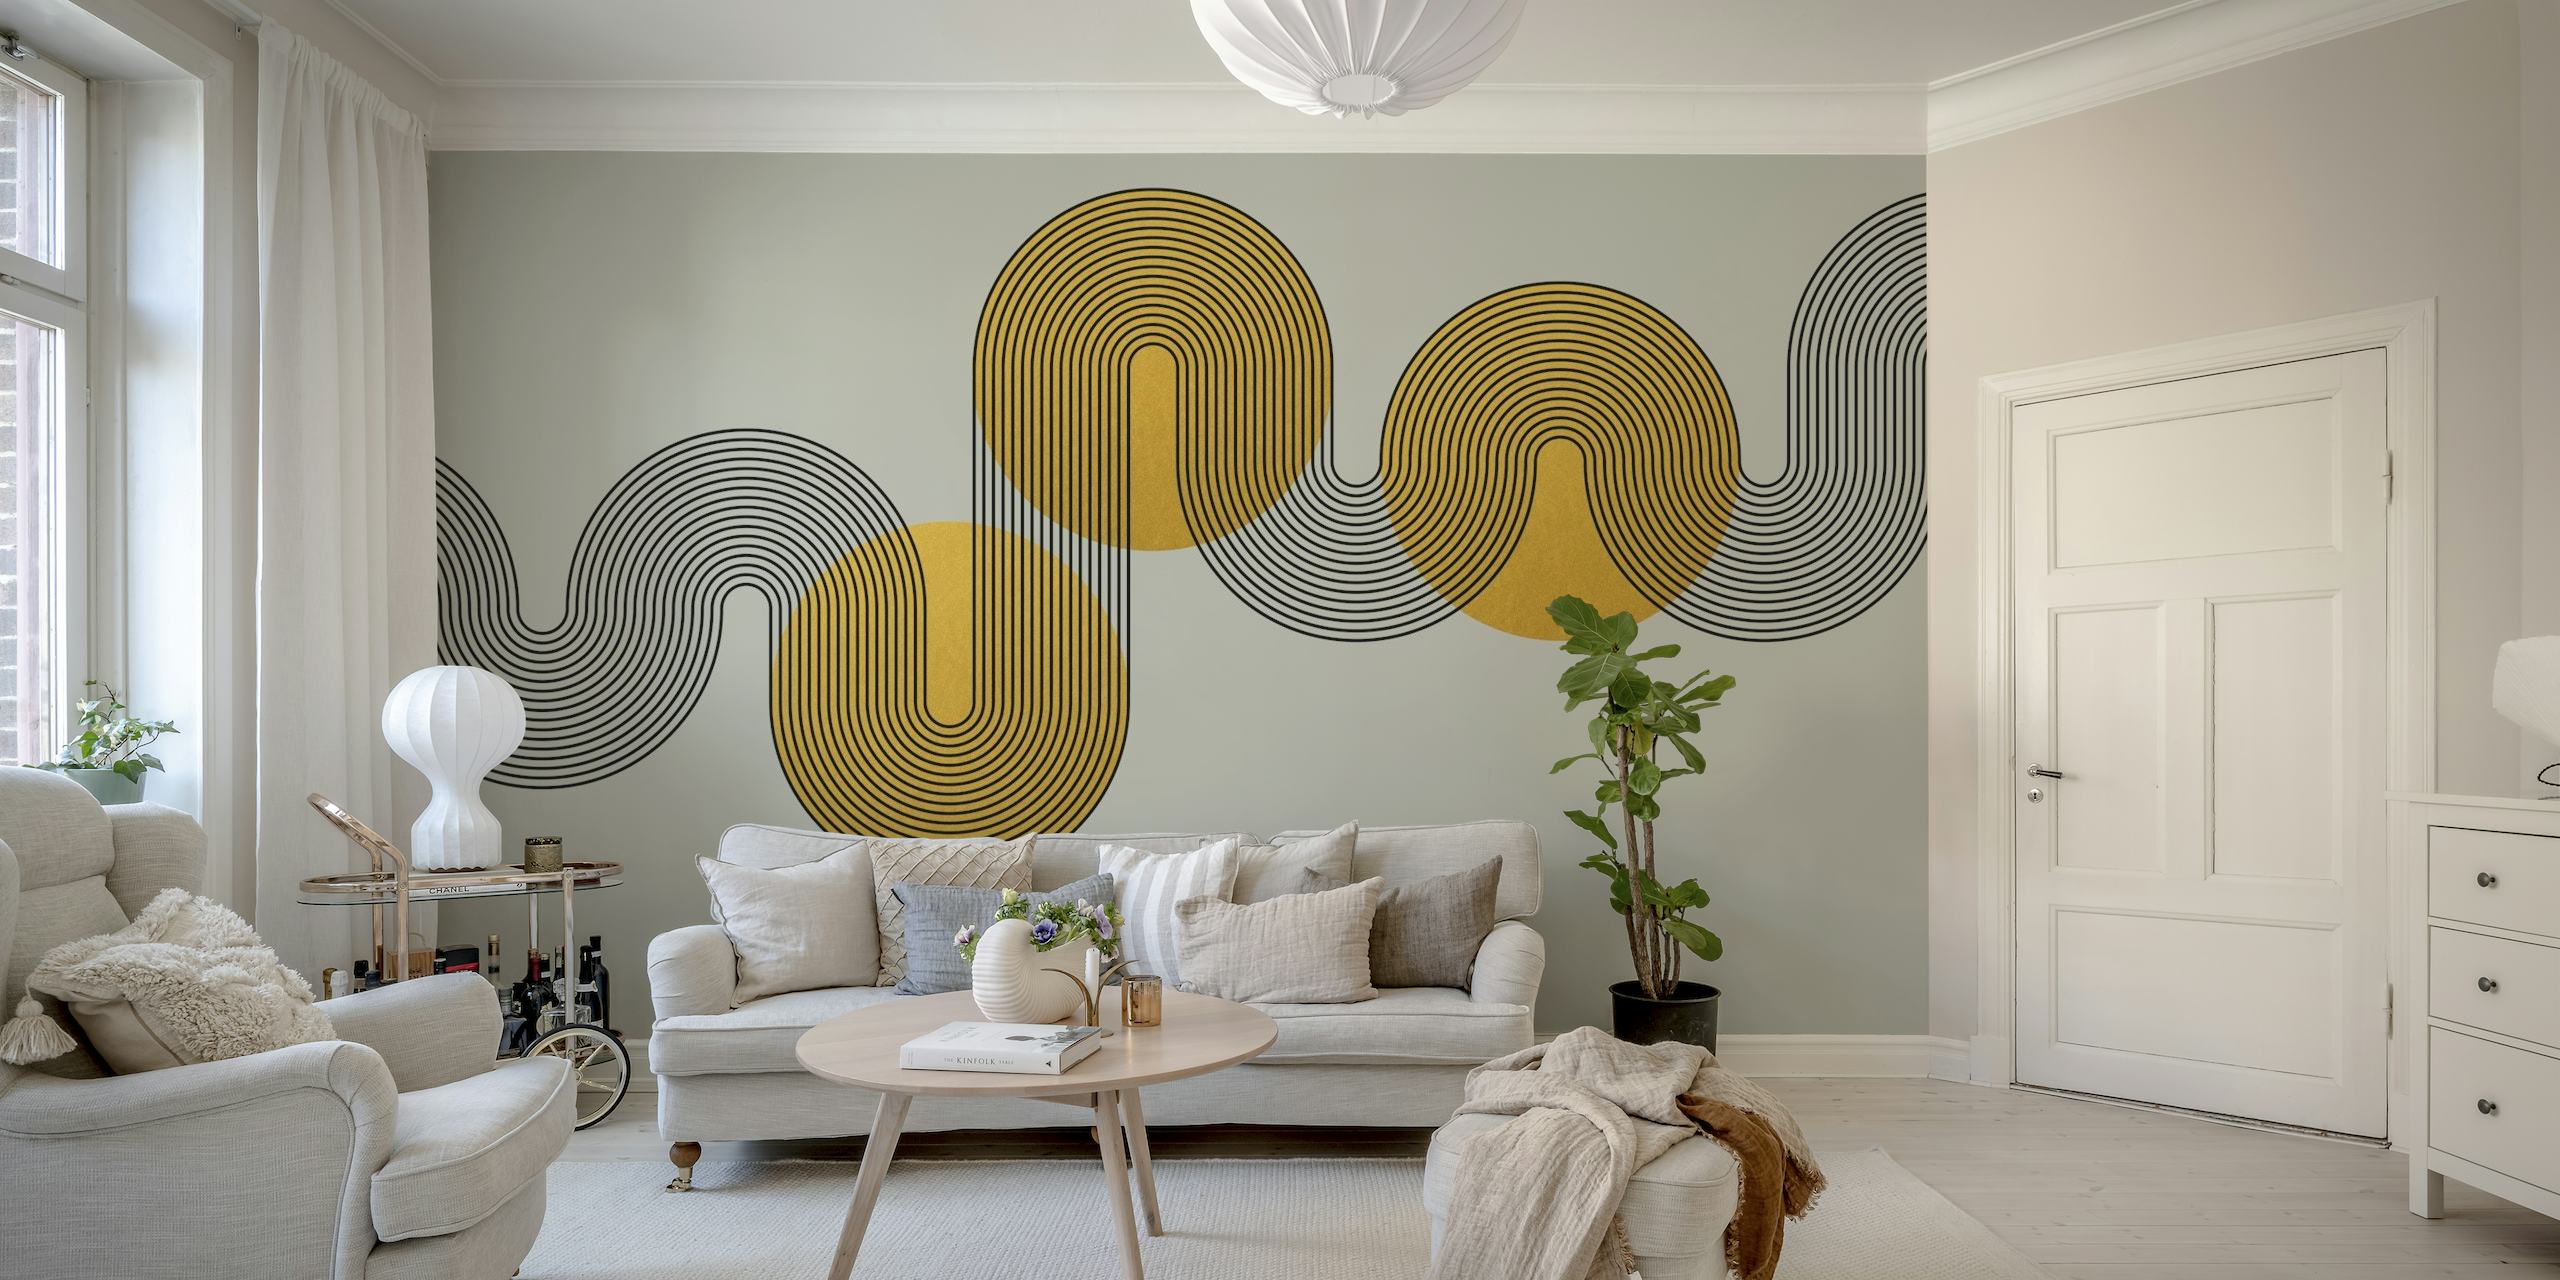 Papier peint mural abstrait de style Art Déco avec des formes géométriques dans des tons dorés et gris